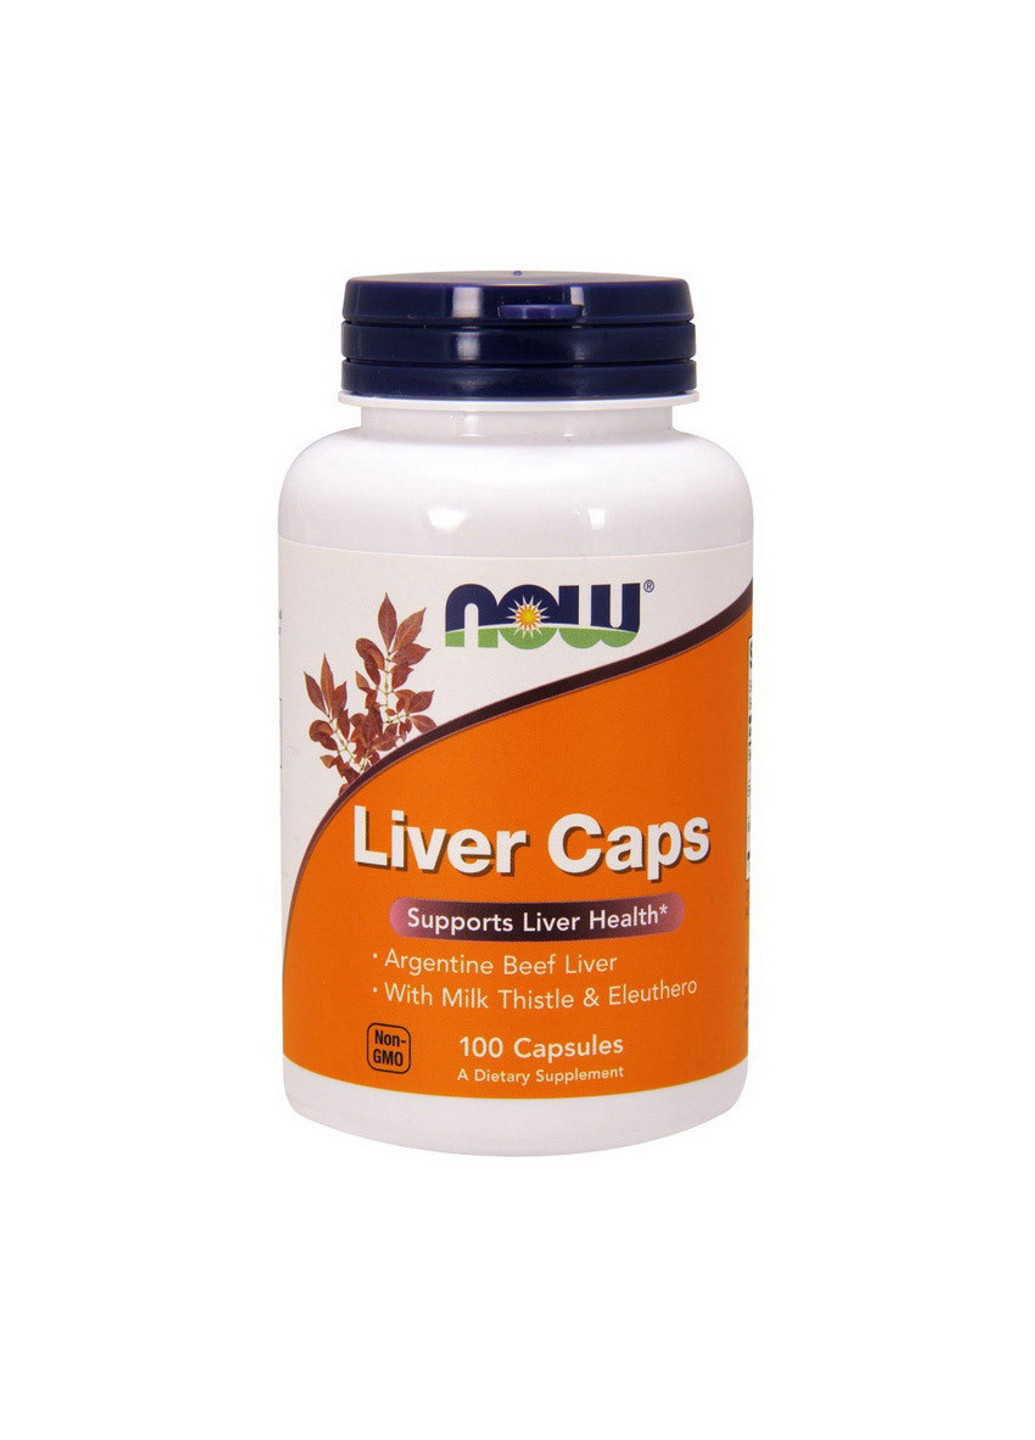 Таблетки для печени Liver Caps (100 капс) нау фудс ливер капс Now Foods (255409956)